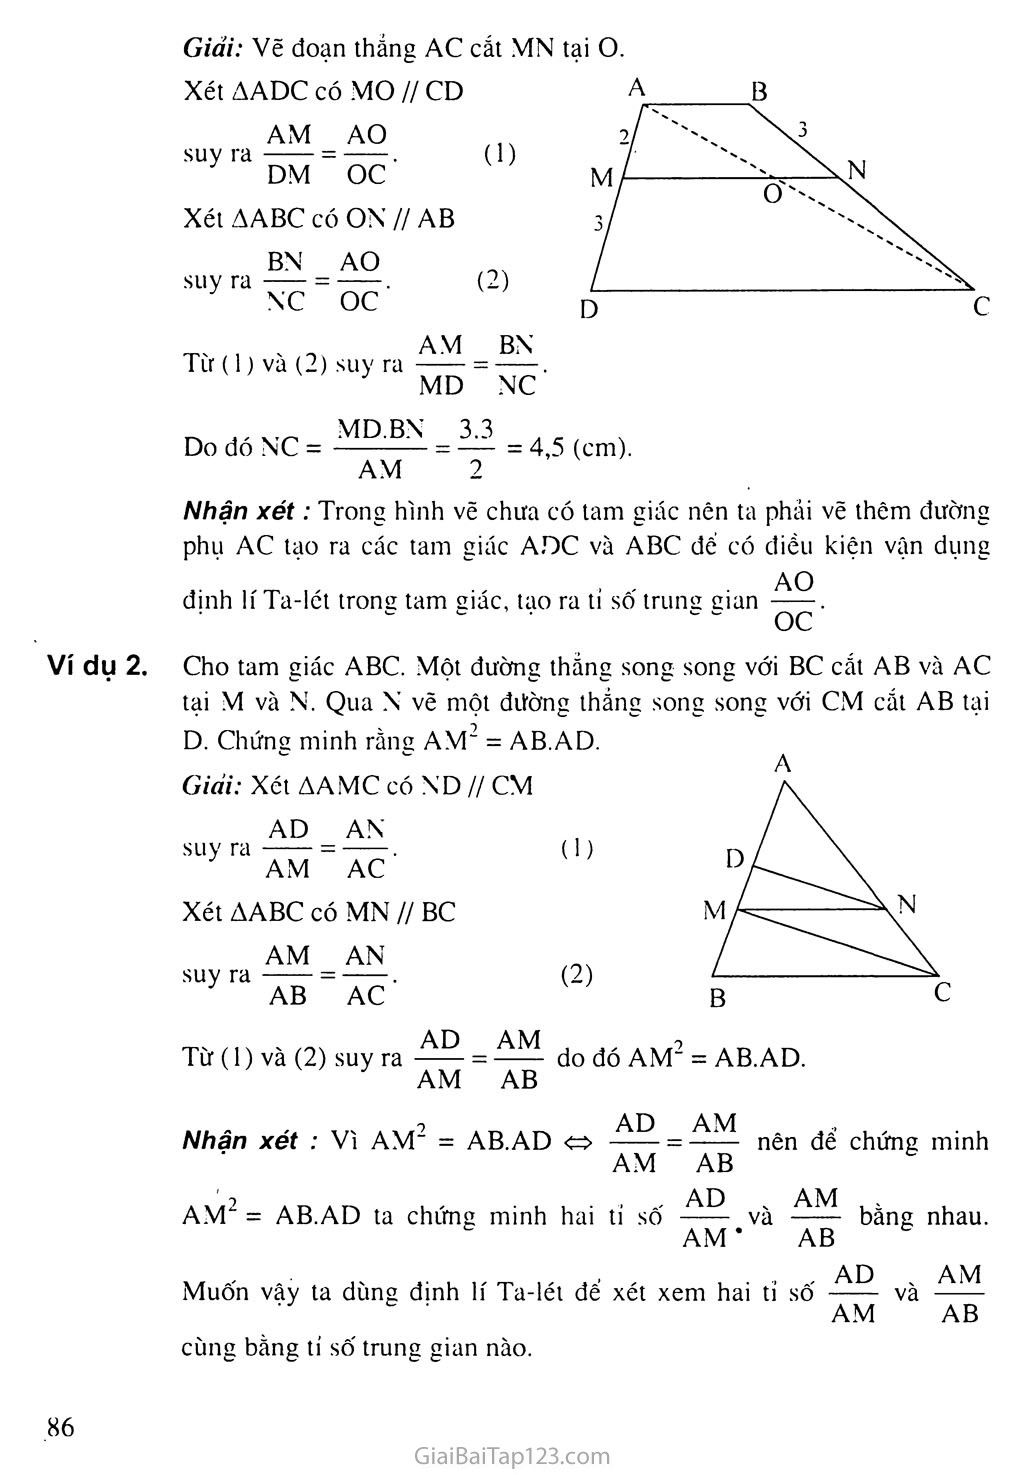 Bài 1. Định lí Ta-lét trong tam giác trang 2